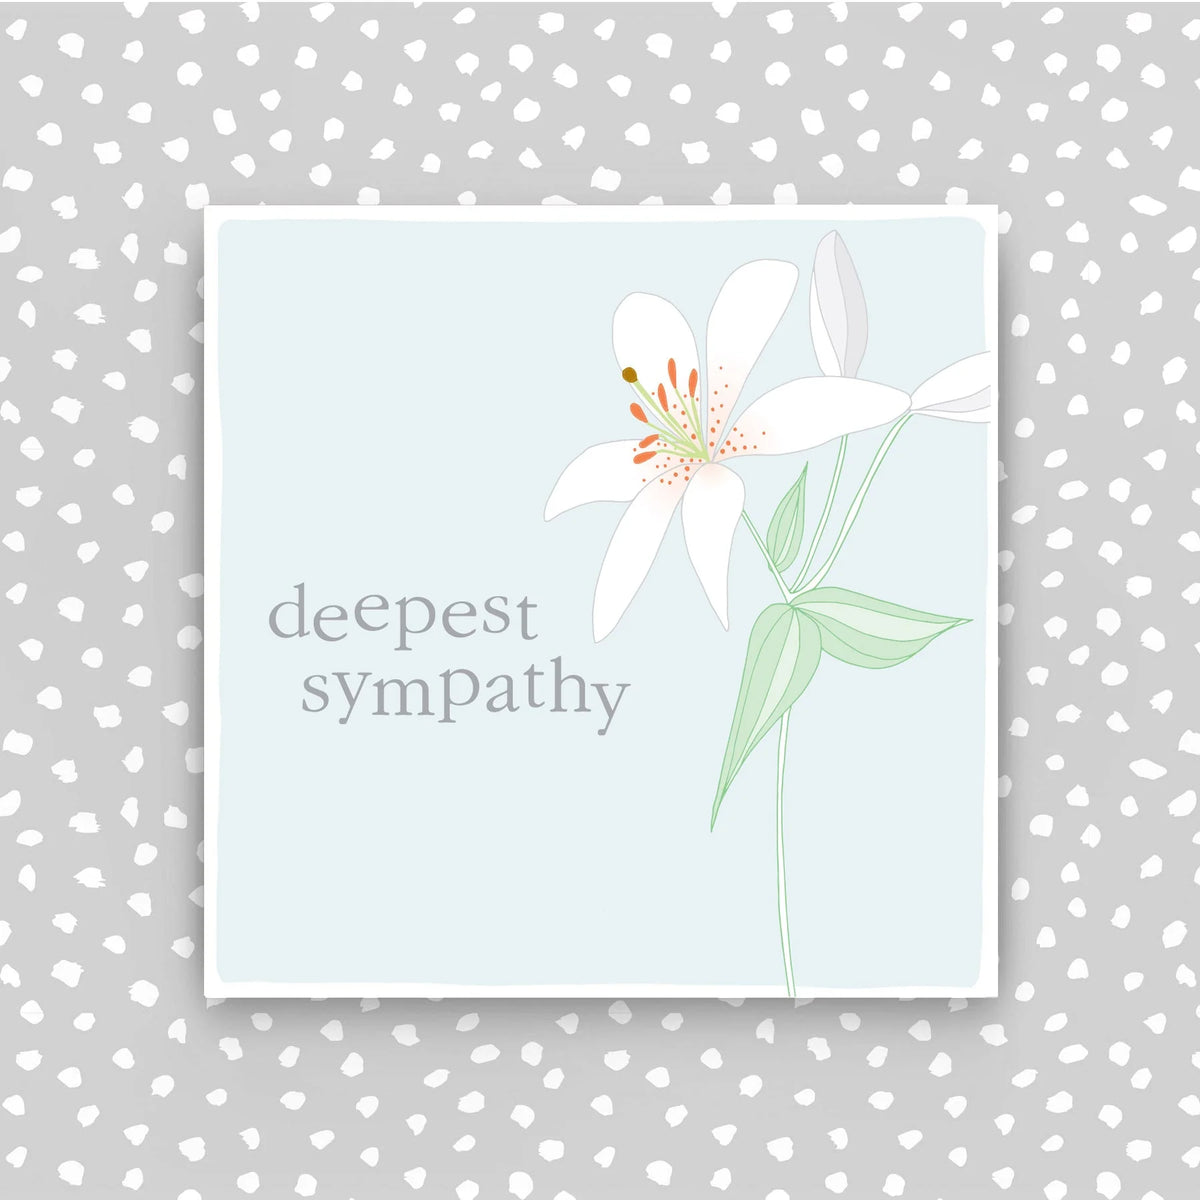 Sympathy - Deepest Sympathy